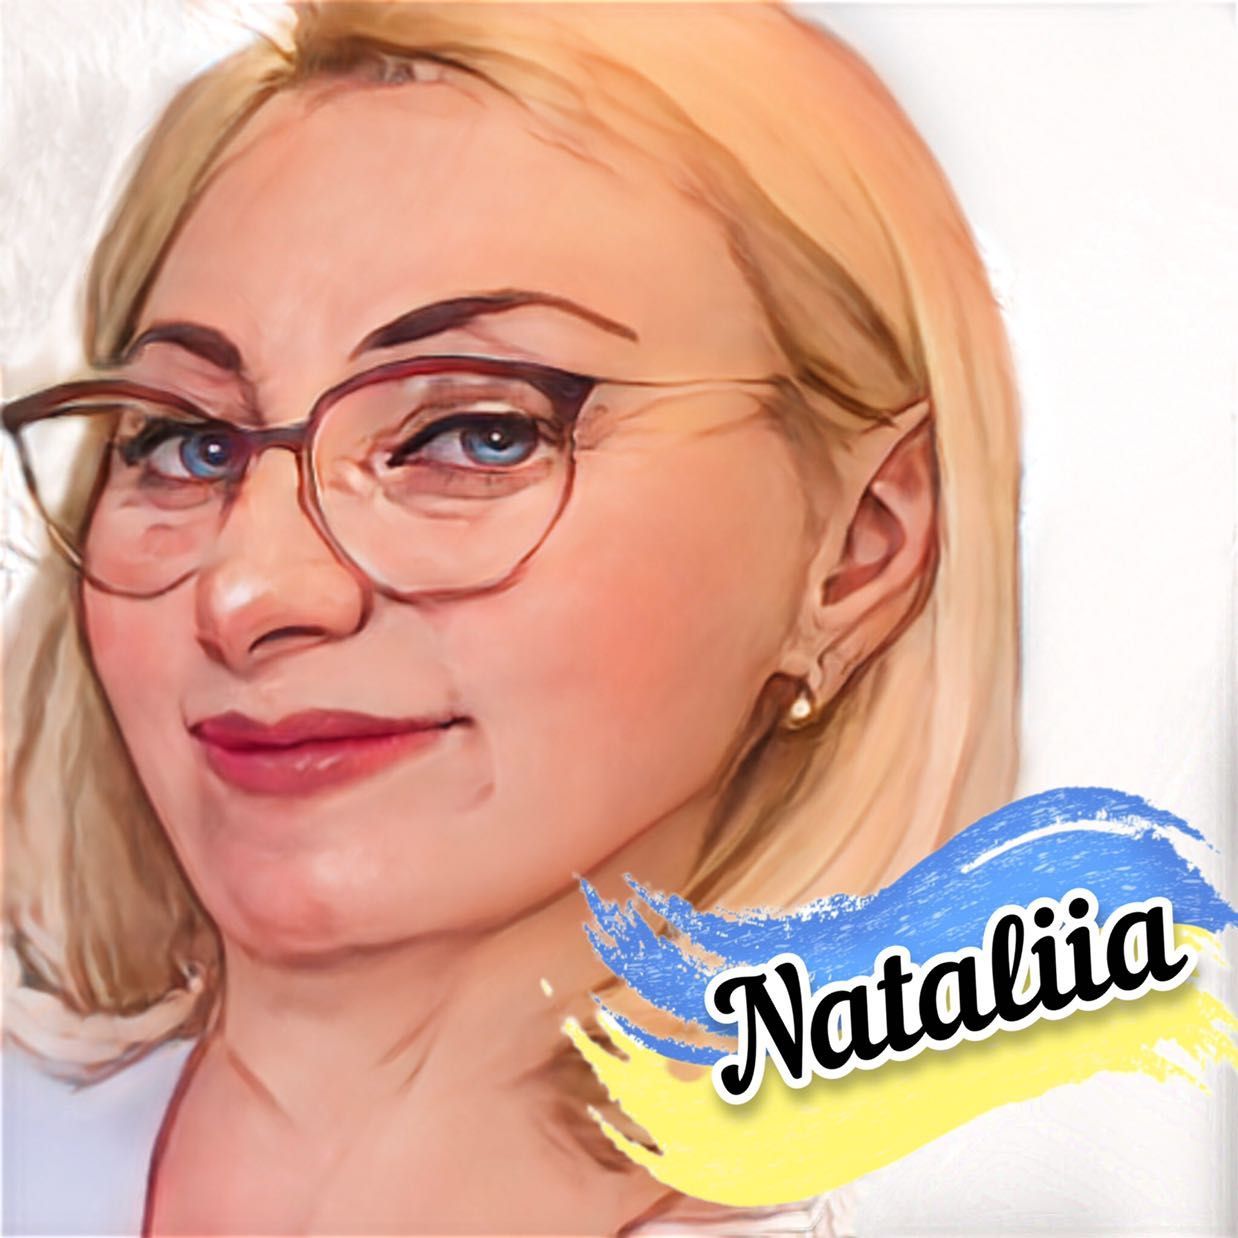 Nataliia Tymoshenko - Beautyartlab be a professional